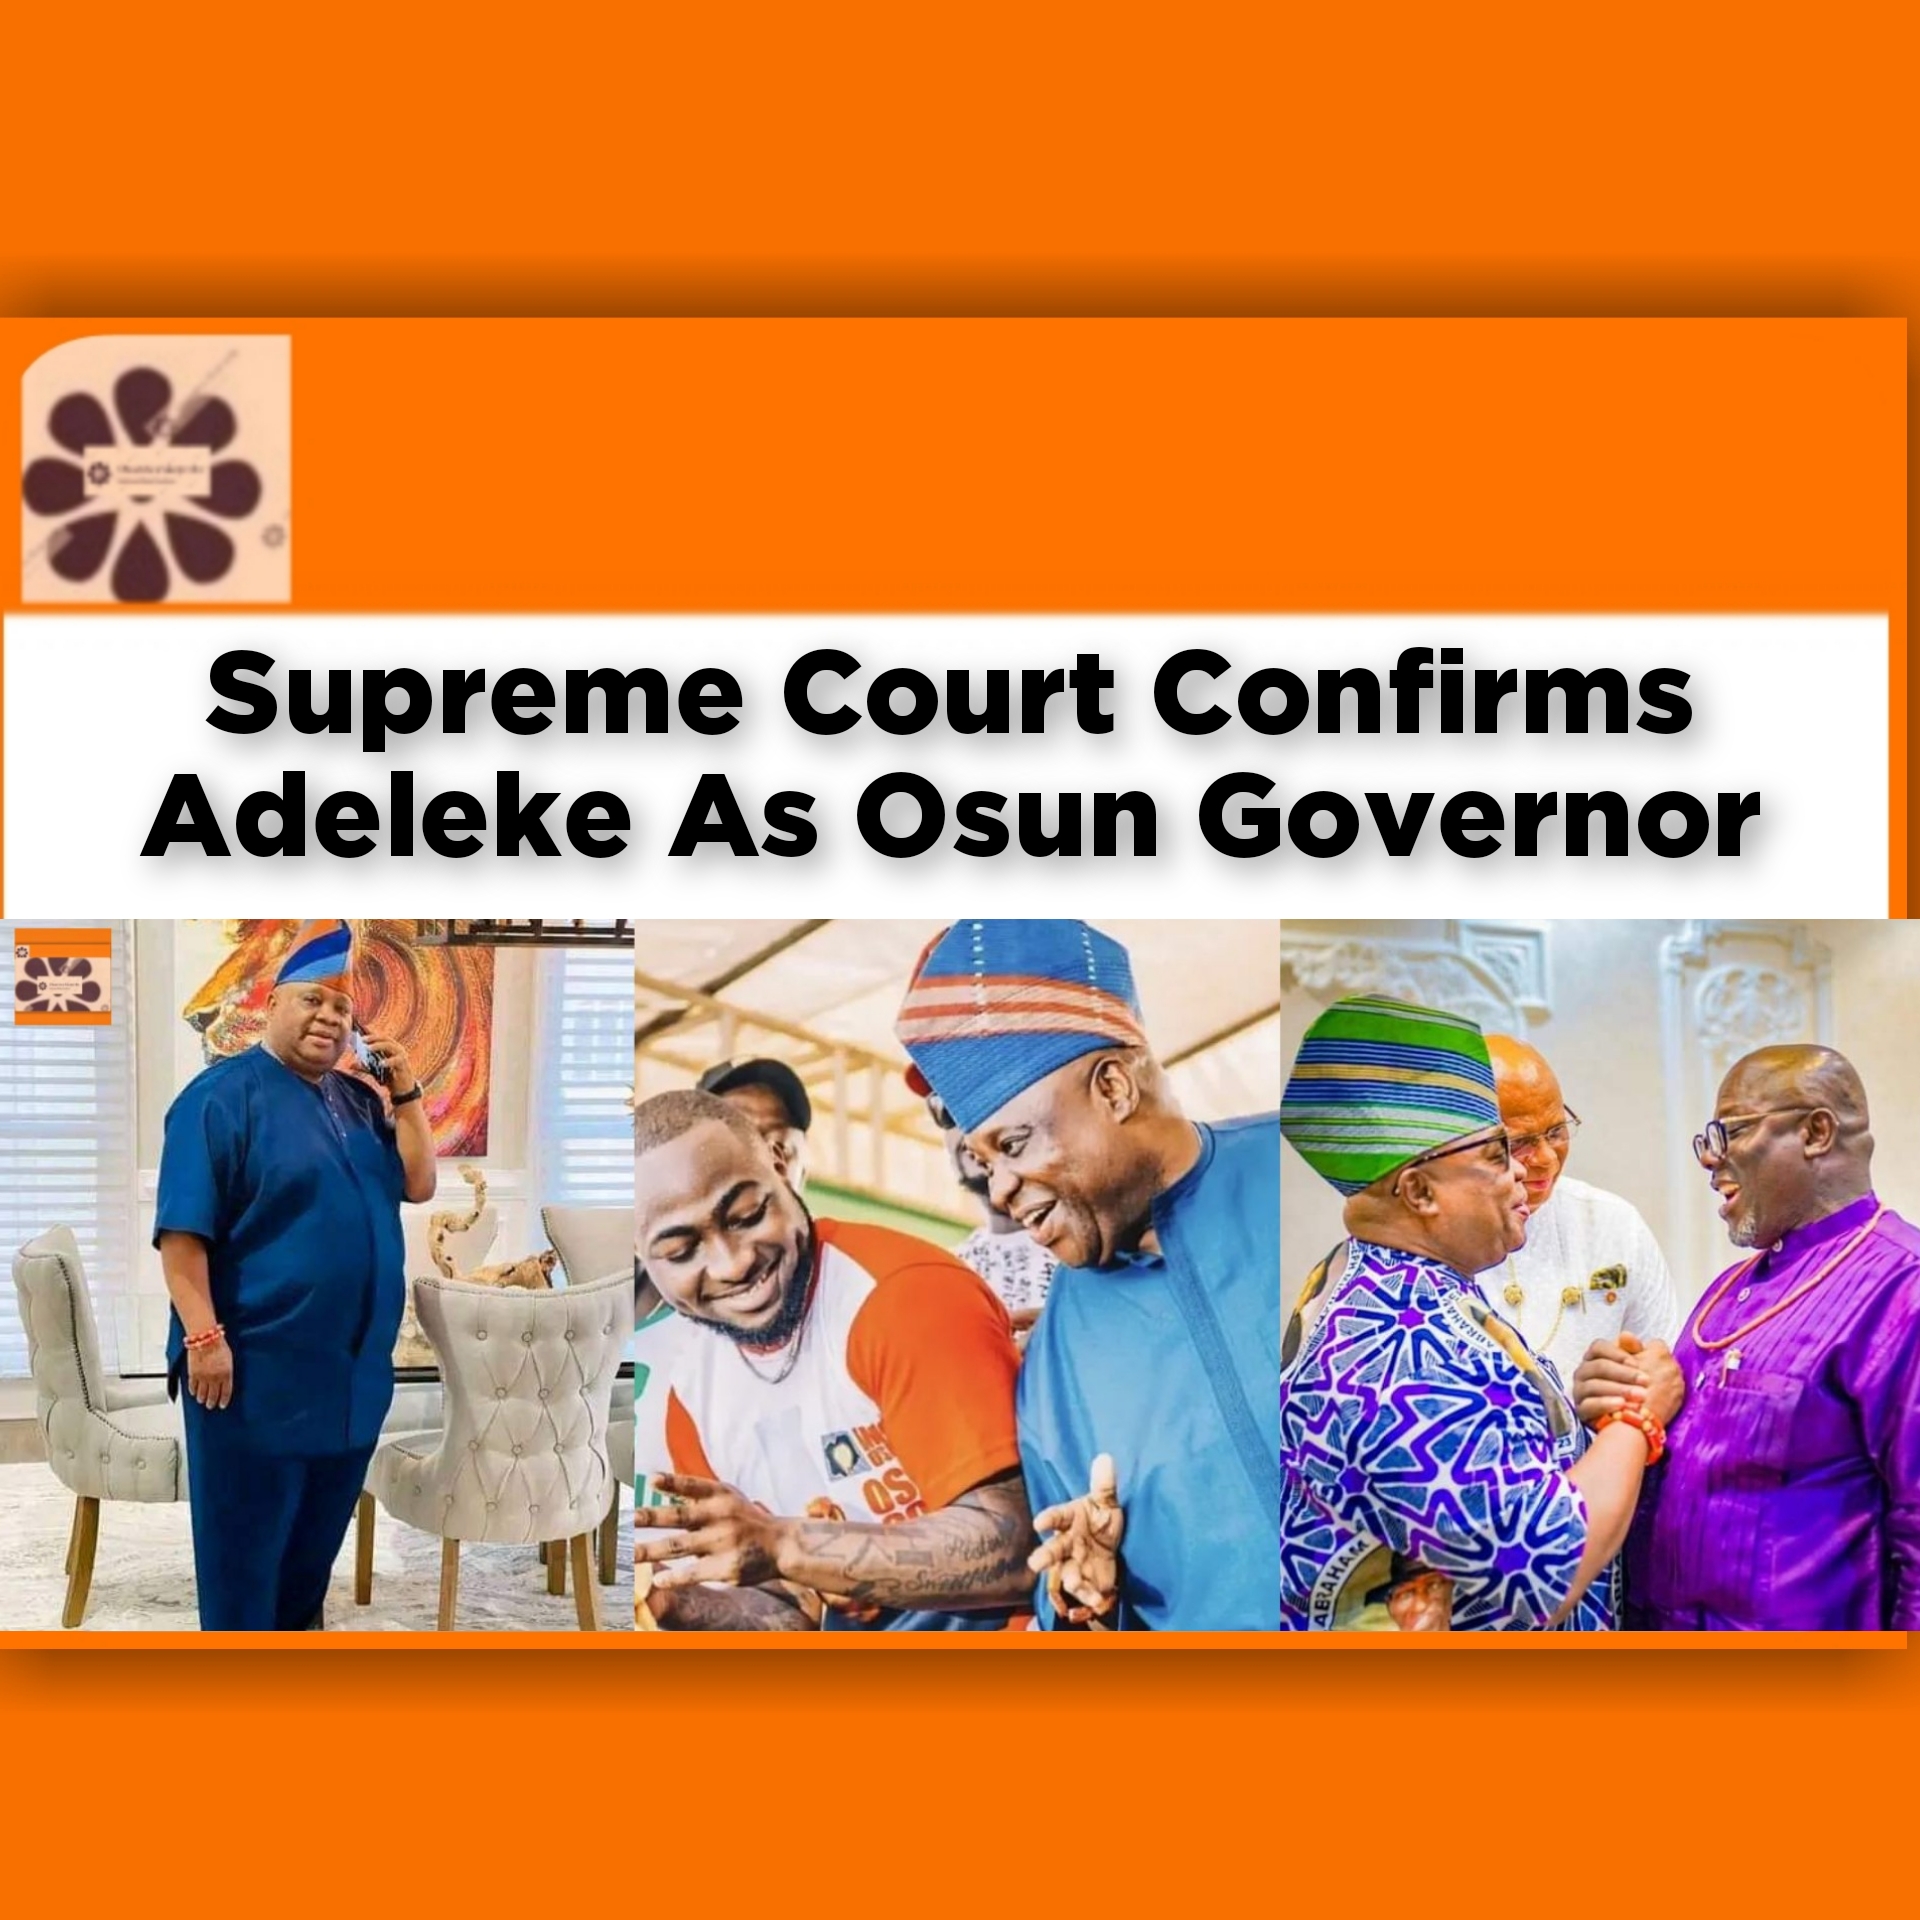 Supreme Court Confirms Adeleke As Osun Governor ~ OsazuwaAkonedo #Ademola #Adegboyega #Adeleke #APC #confirms #Governor #Osun #Oyetola #PDP #politics #Supreme